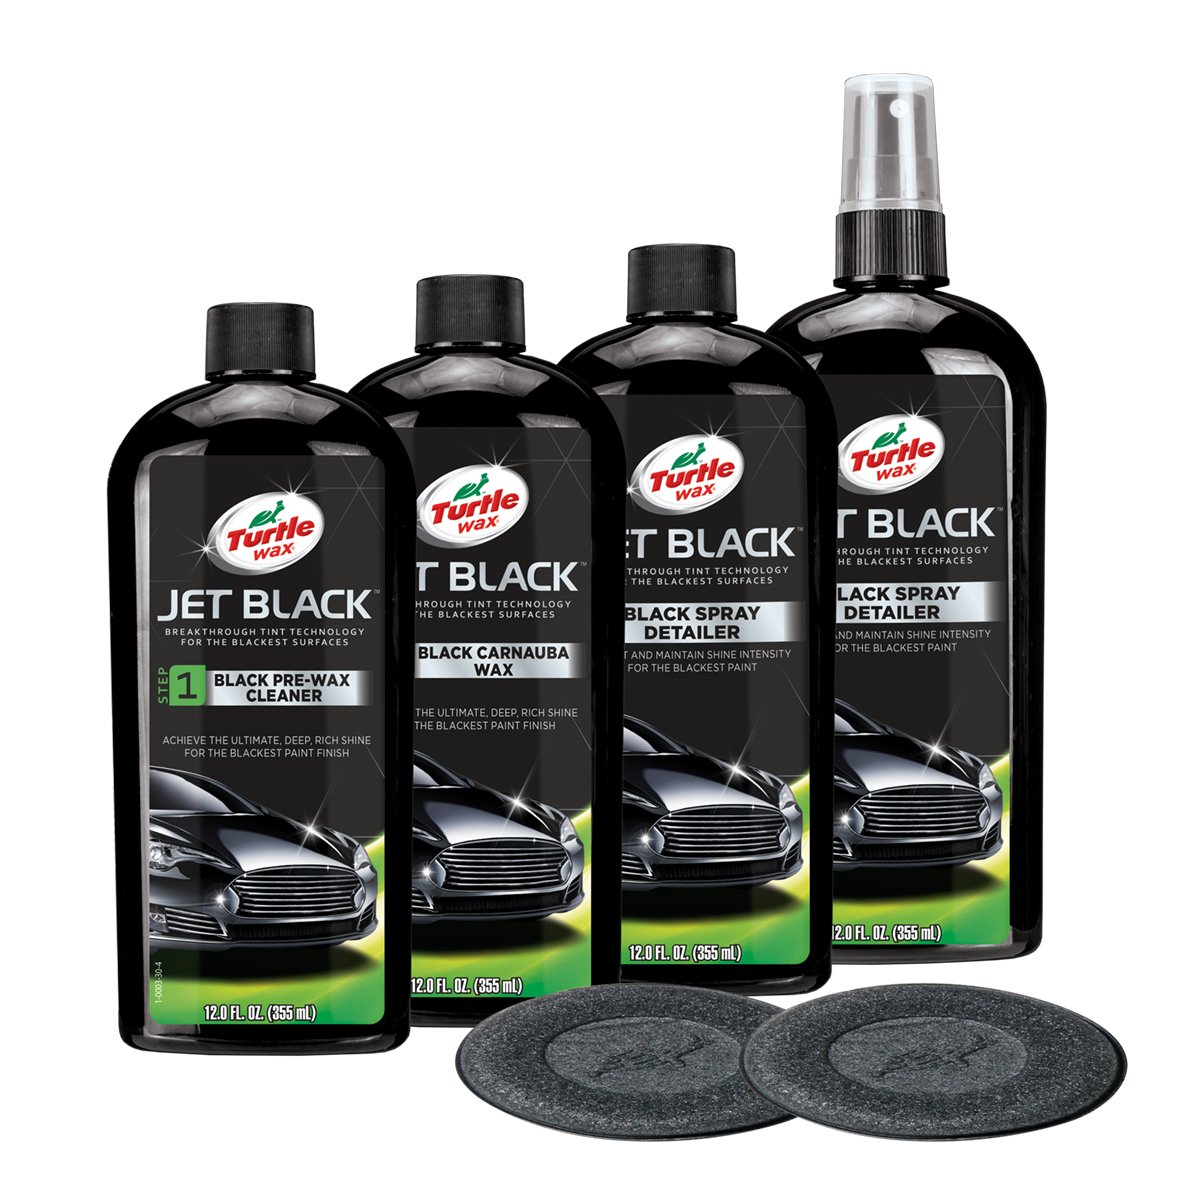 Блек бокс комплект MULTI Turtle Wax Jet Black Box для відновлення лакофарбового покриття чорного автомобіля (52731) - фото 2